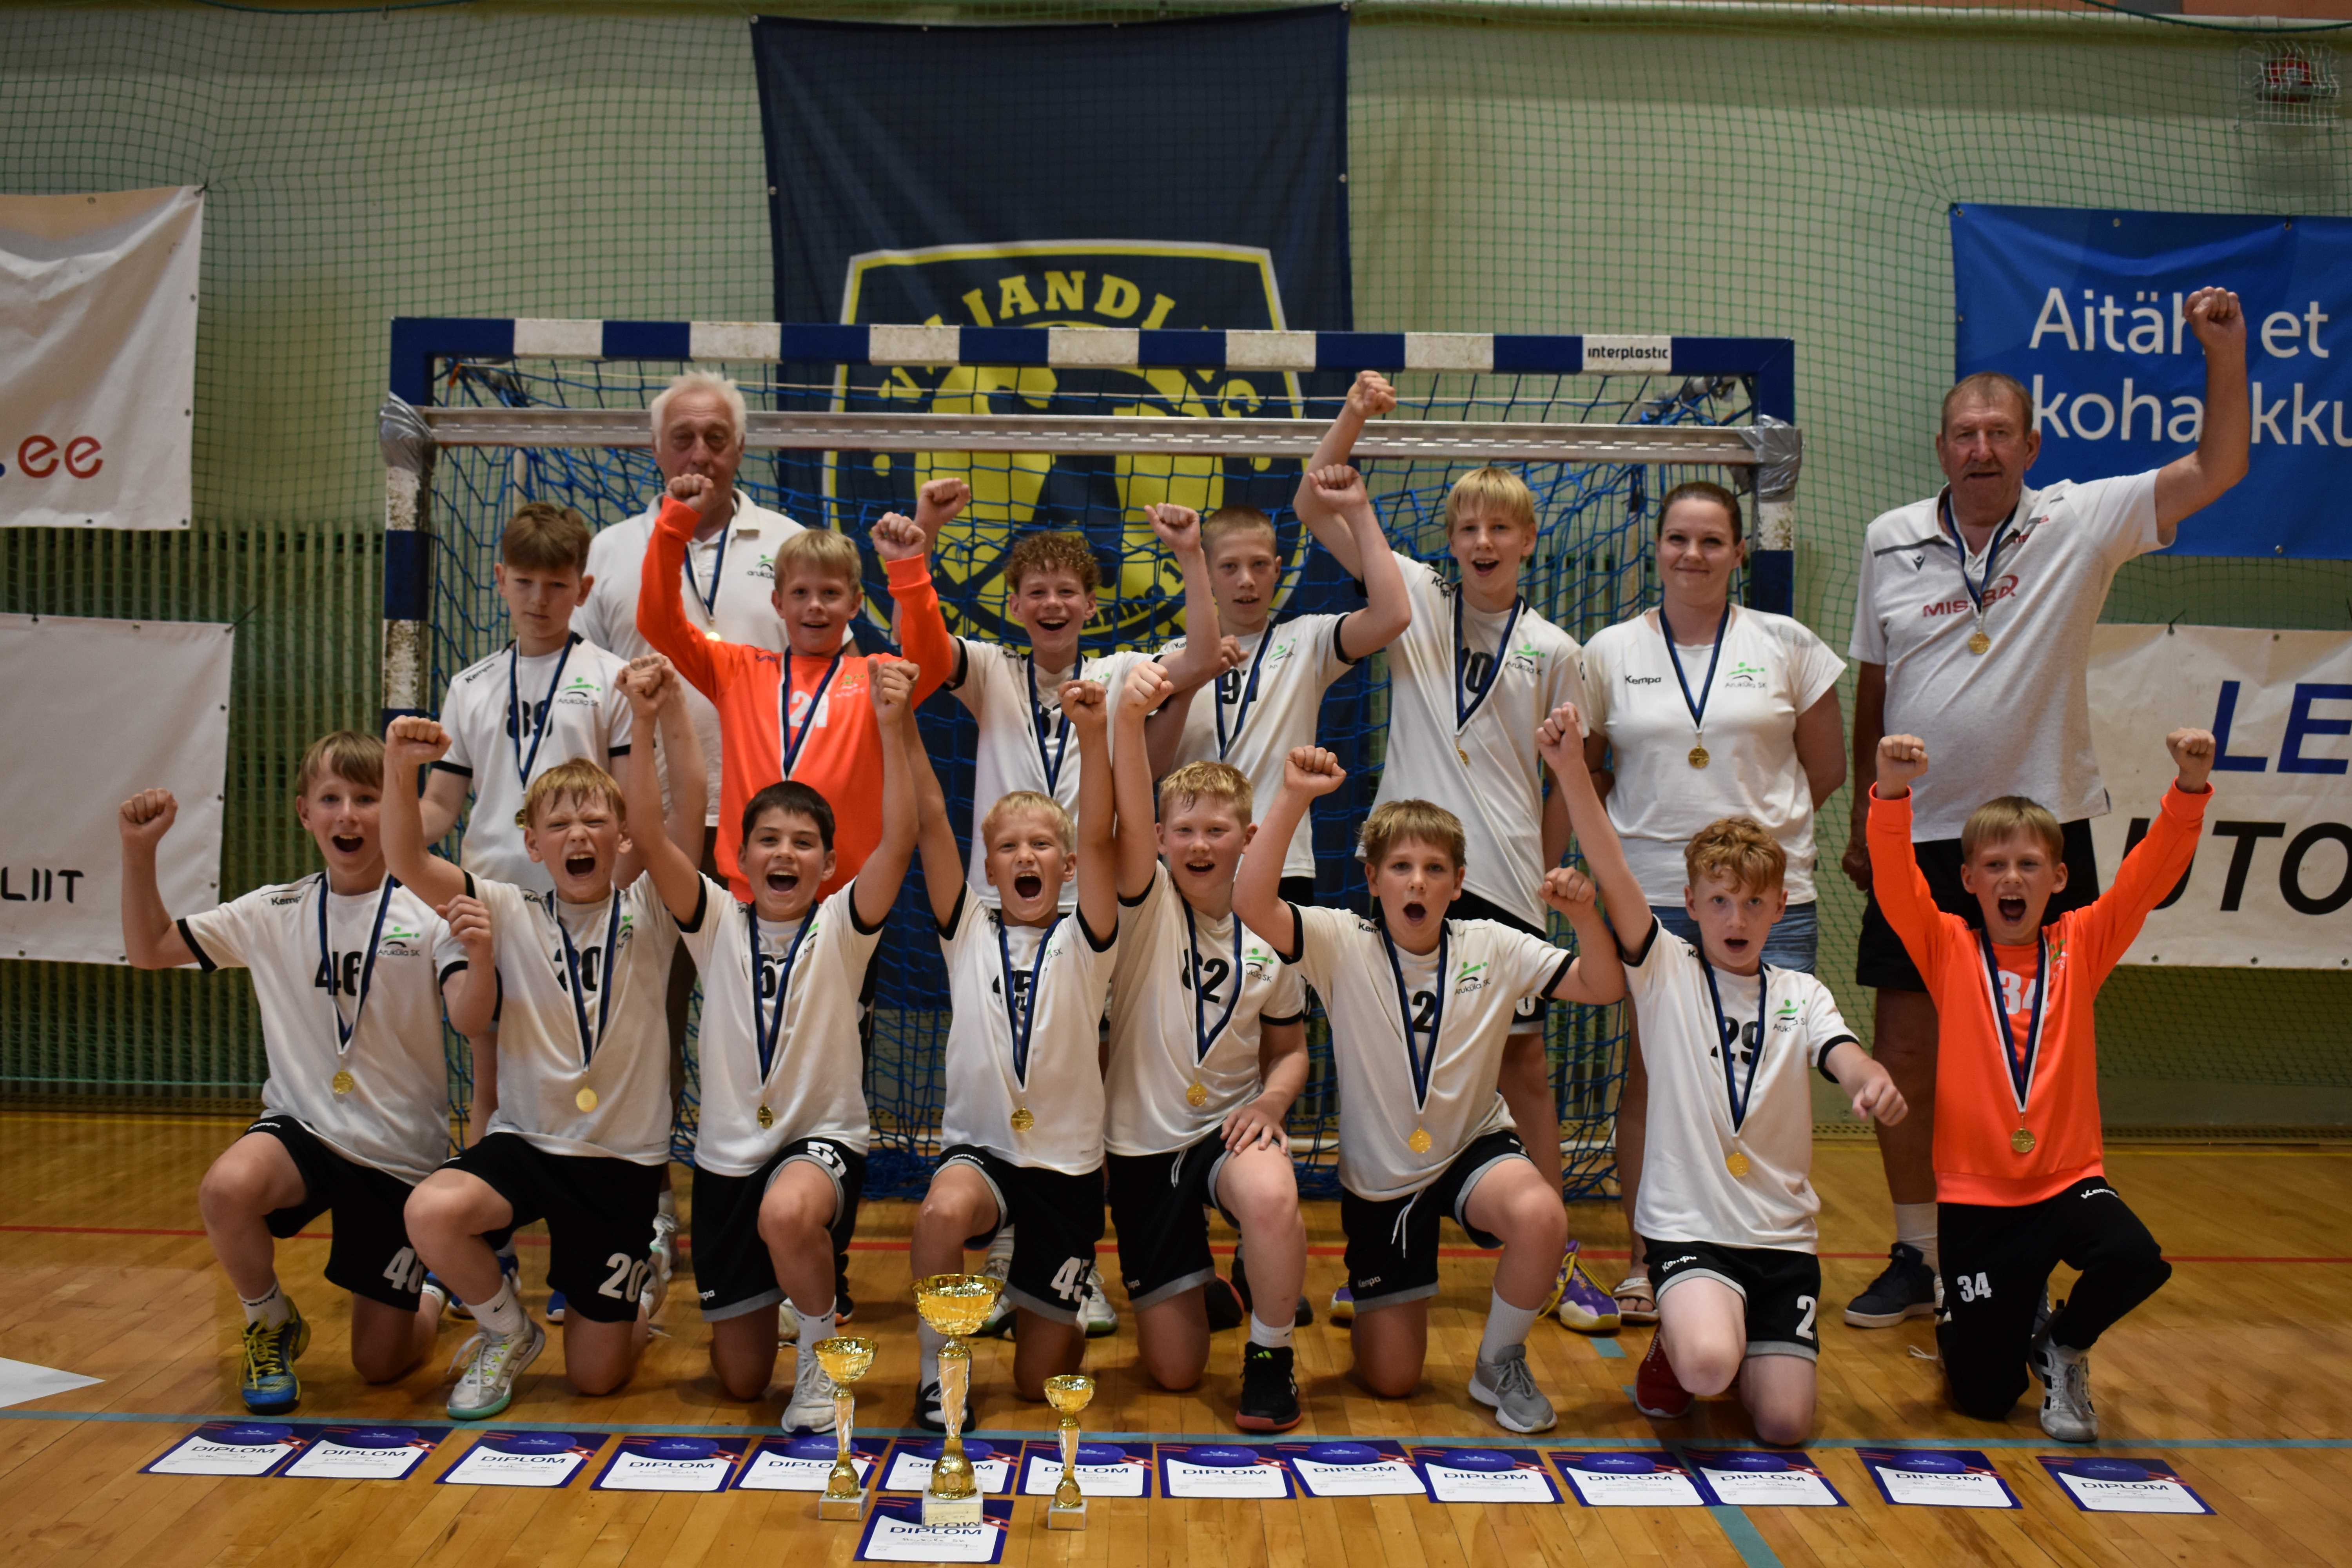 Aruküla Spordiklubi võistkond on 2024 Eesti meister noormeeste D2-vanuseklassi käsipallis